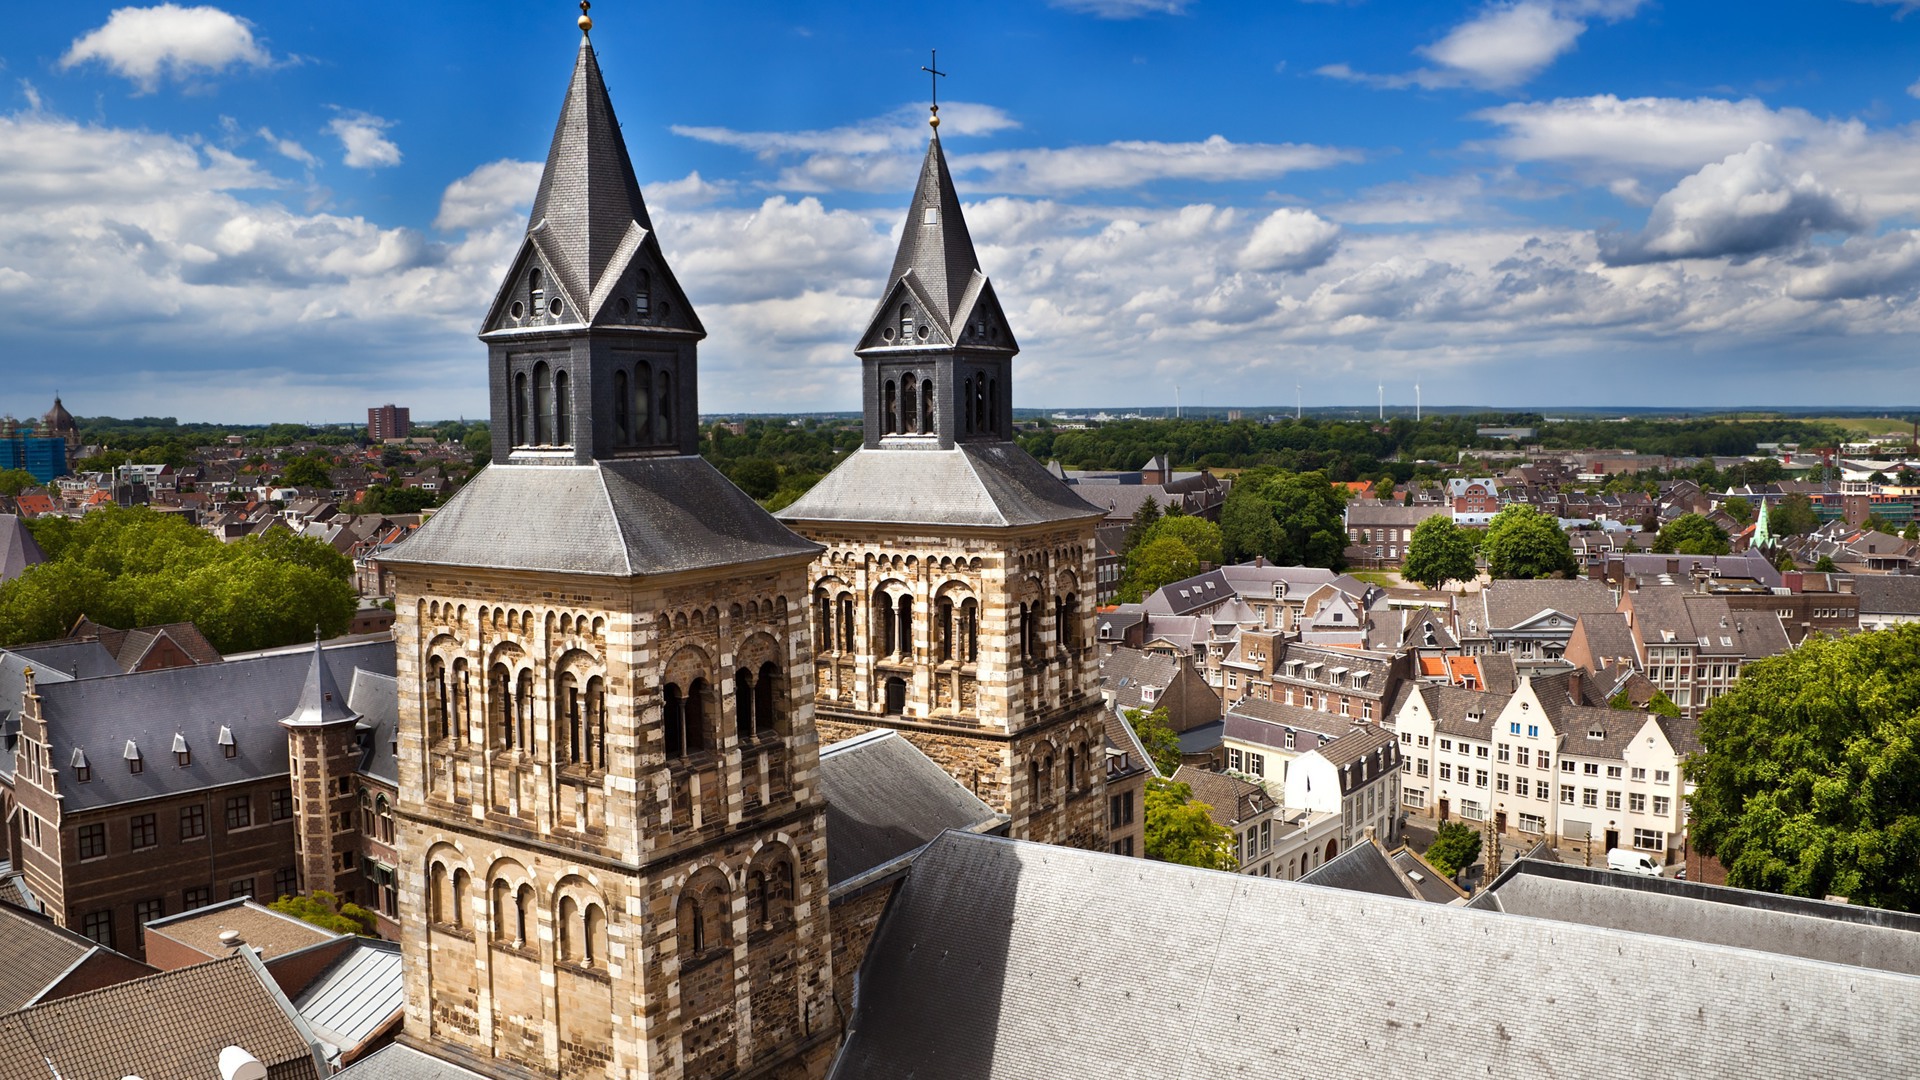 Ontdek de rijke geschiedenis van Maastricht tijdens je vakantie in Zuid-Limburg